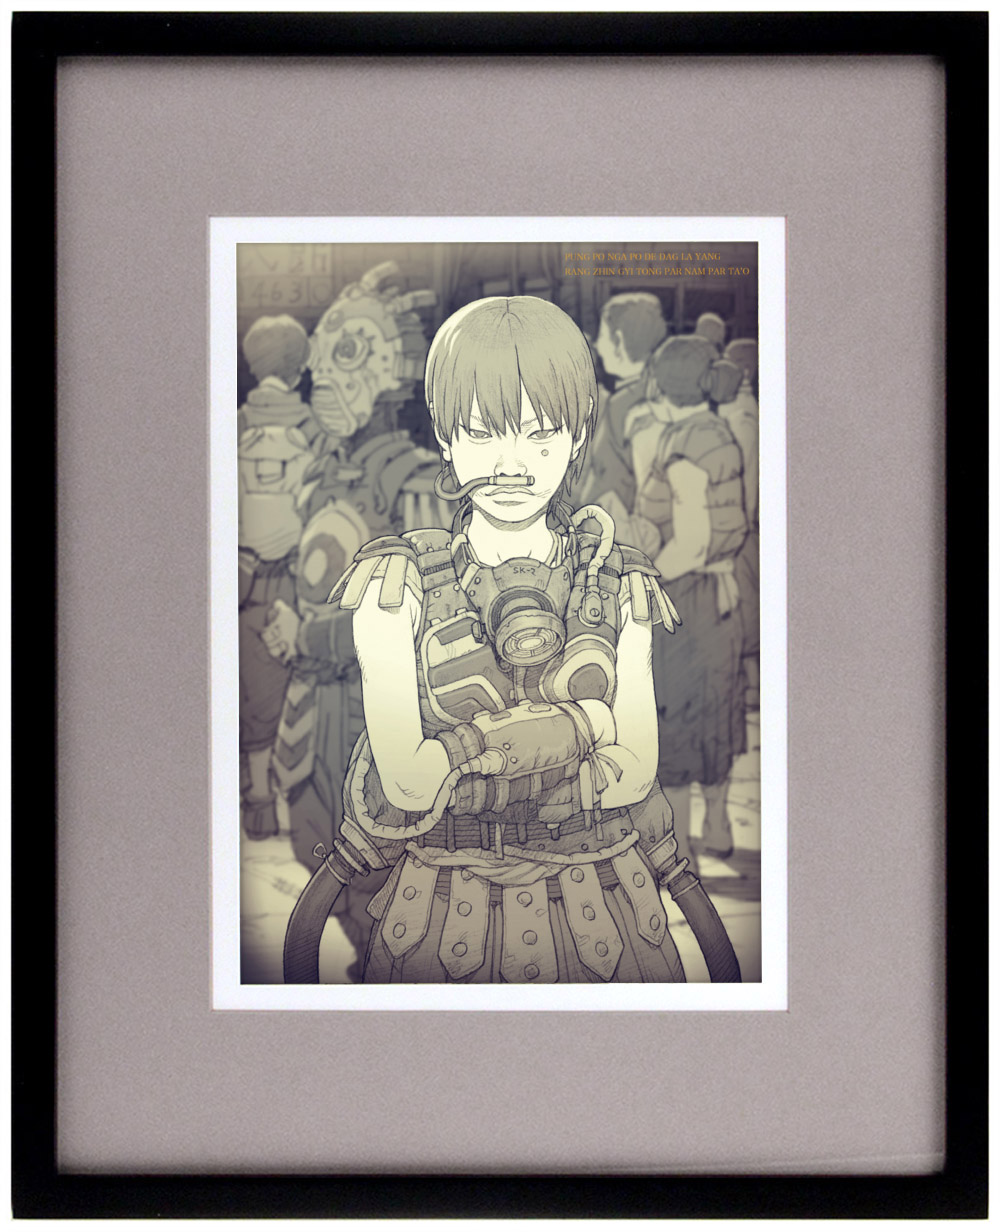 「少女」(A girl) - Framed Illustration 1/5, Tatsuyuki Tanaka